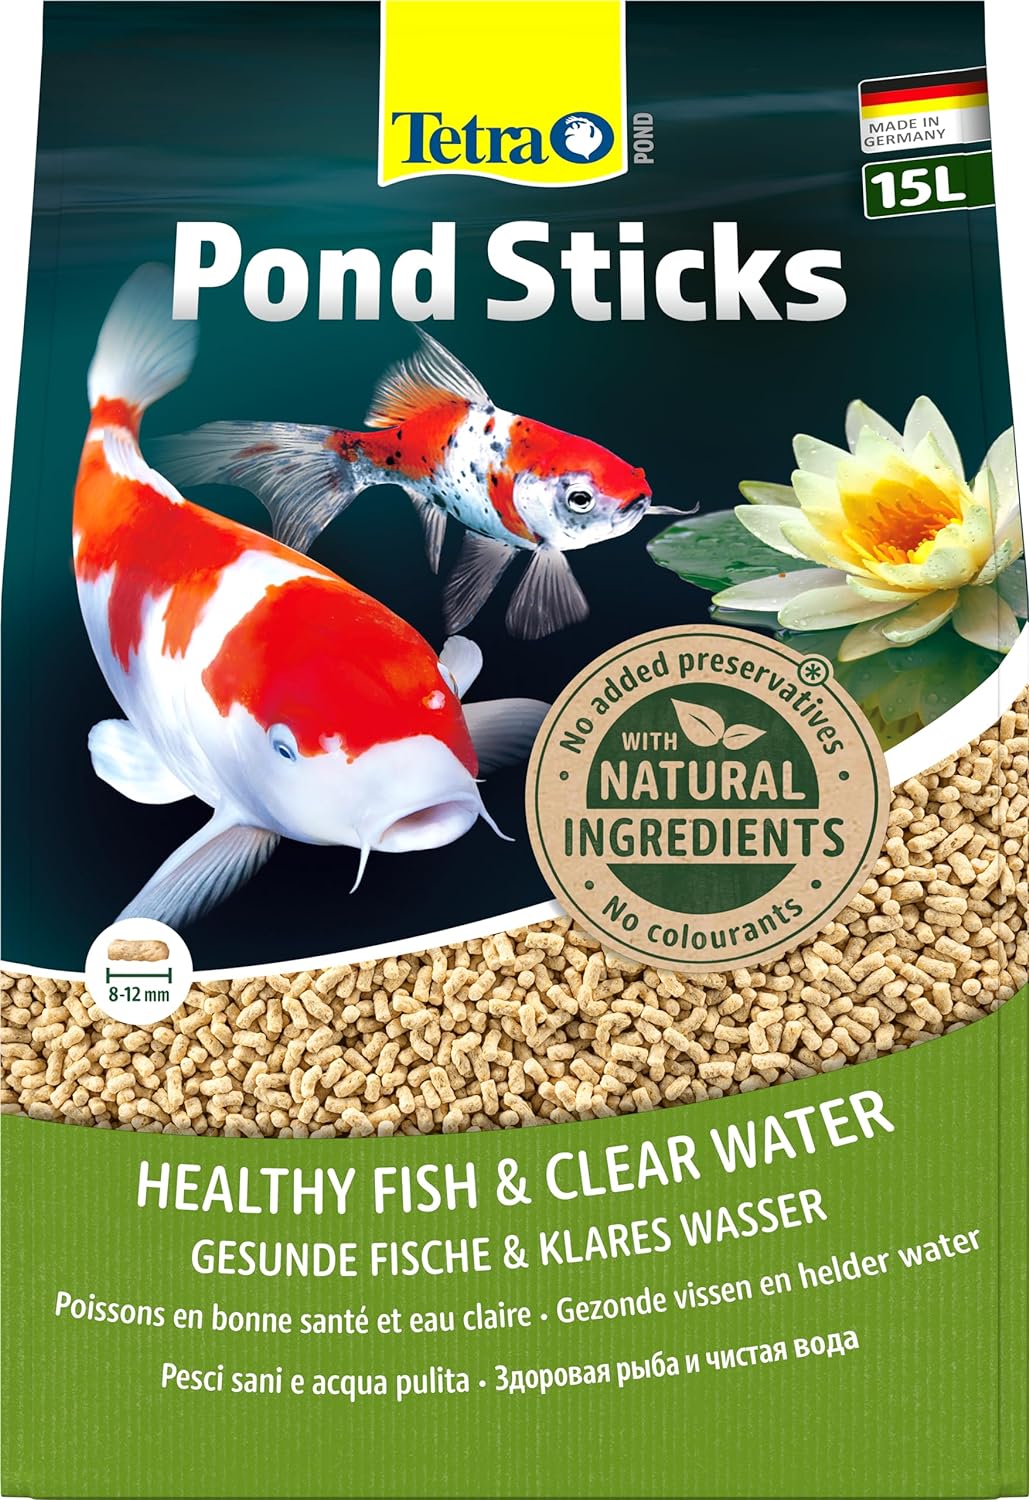 tetra-pond-sticks-15l-aliment-complet-en-sticks-pour-tous-poissons-de-bassin